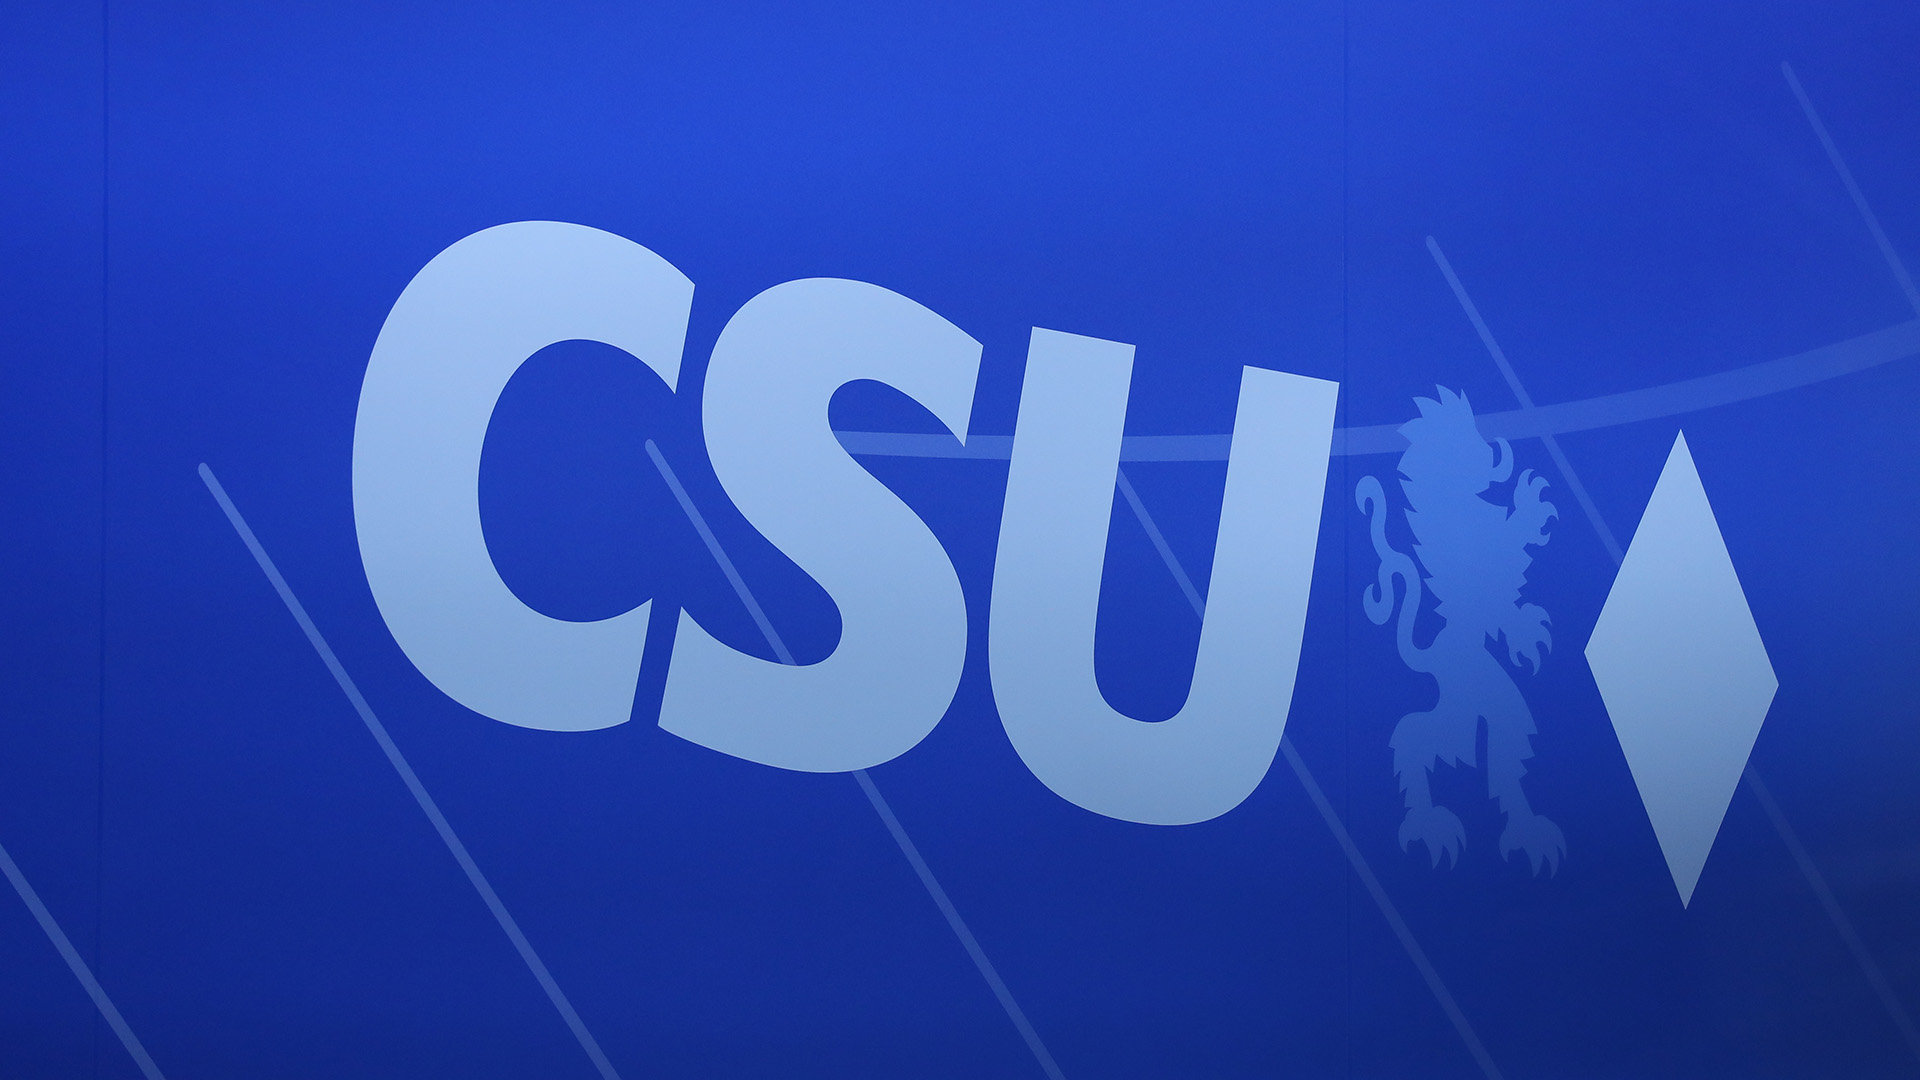 Das Logo der CSU